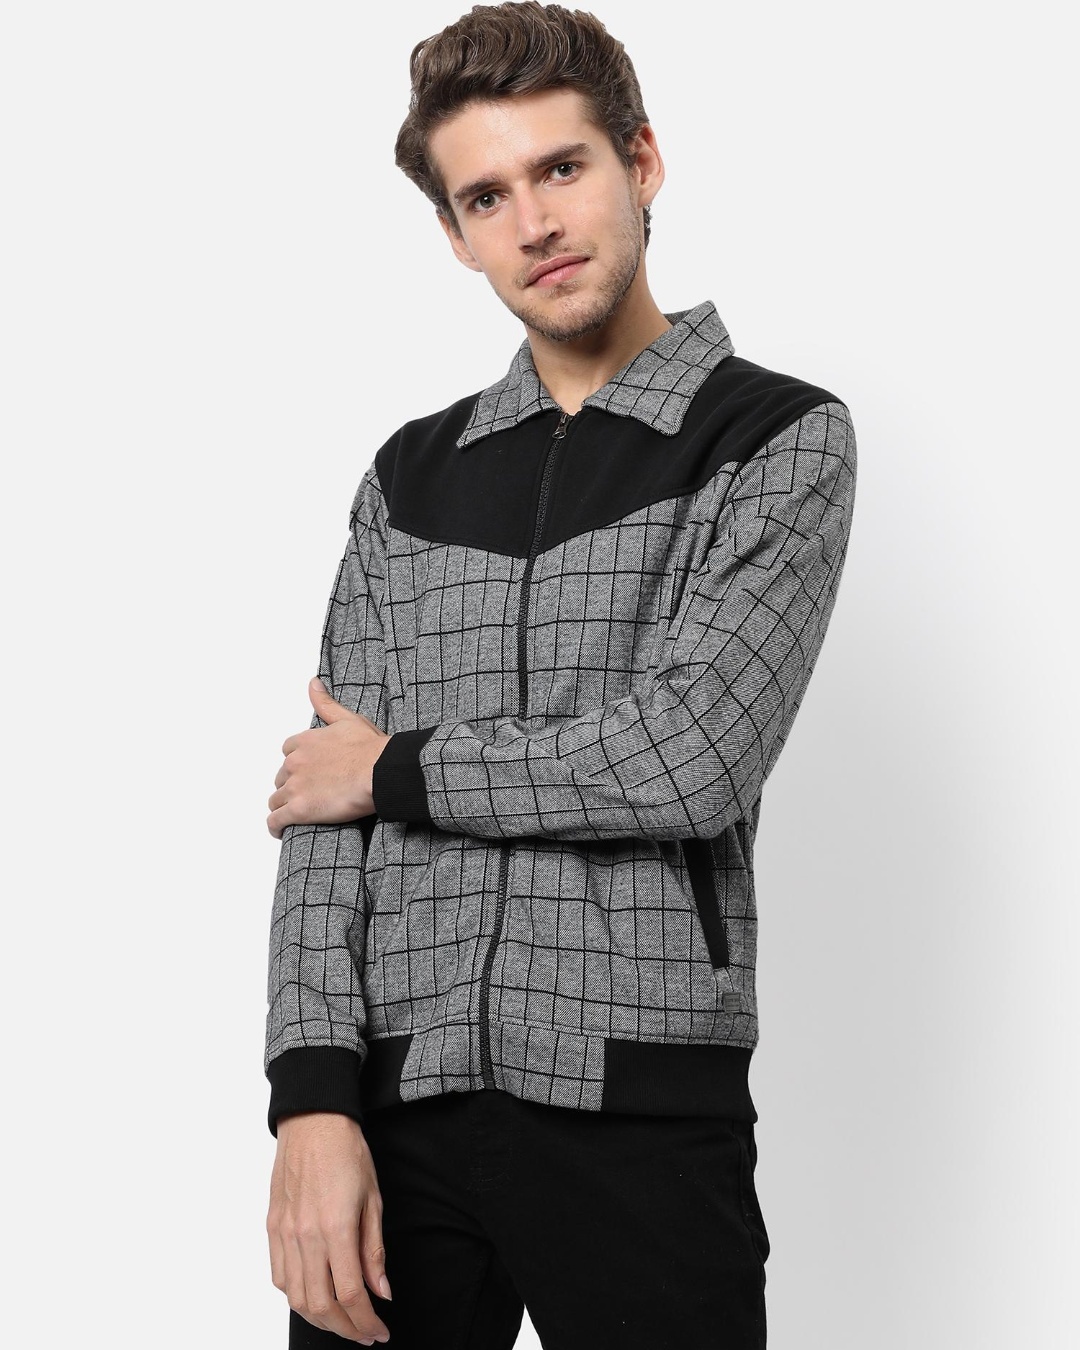 Buy Men's Grey Checked Jacket Online at Bewakoof